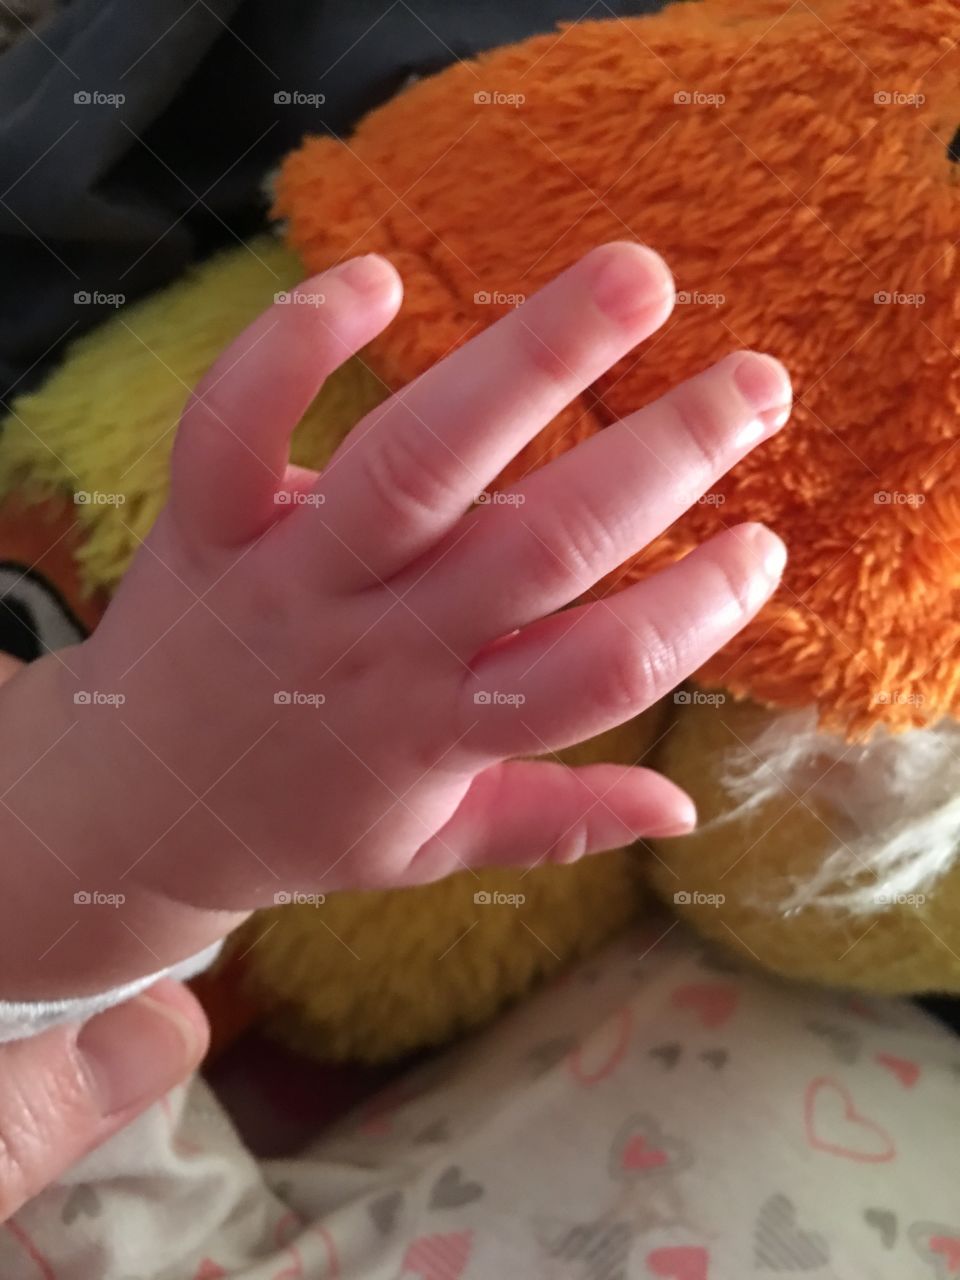 Tiny hand